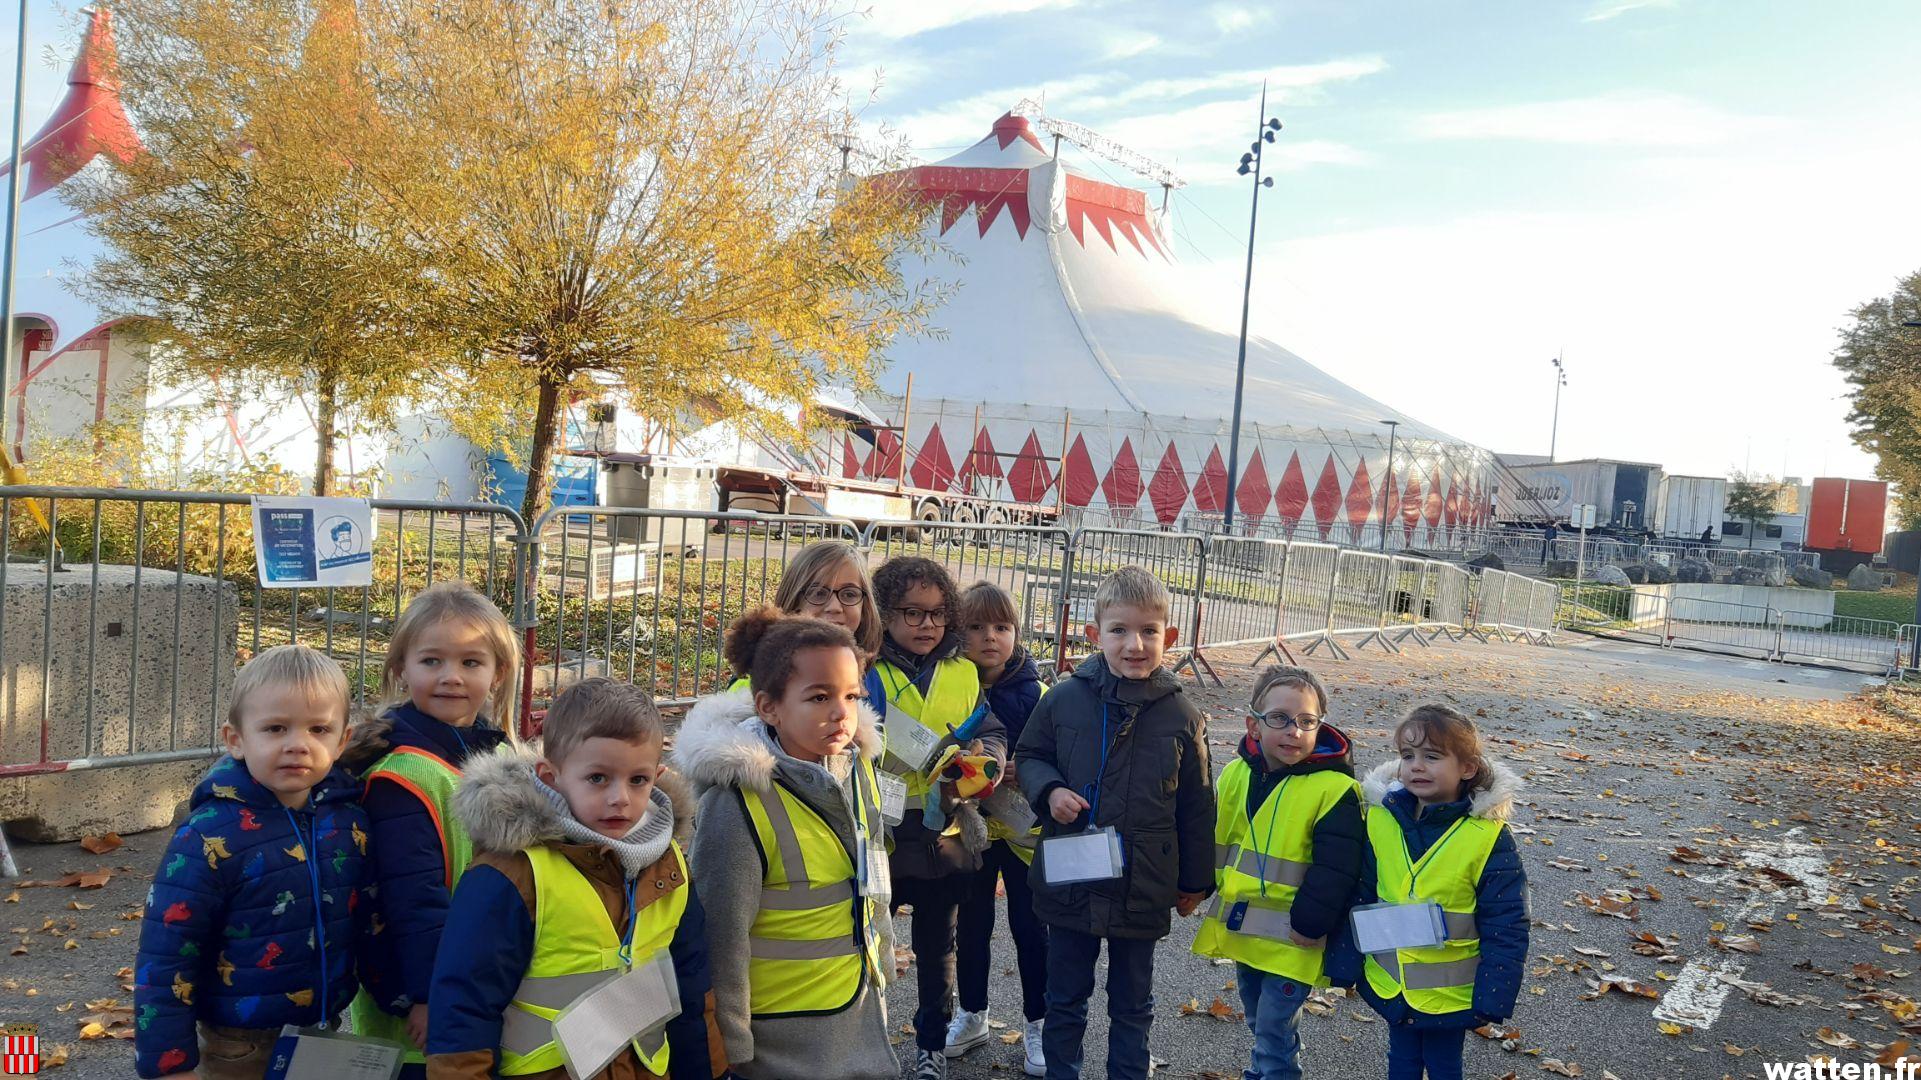 Sortie au cirque Longuenesse Générosité 2021 pour l’école maternelle Brachet-Drila